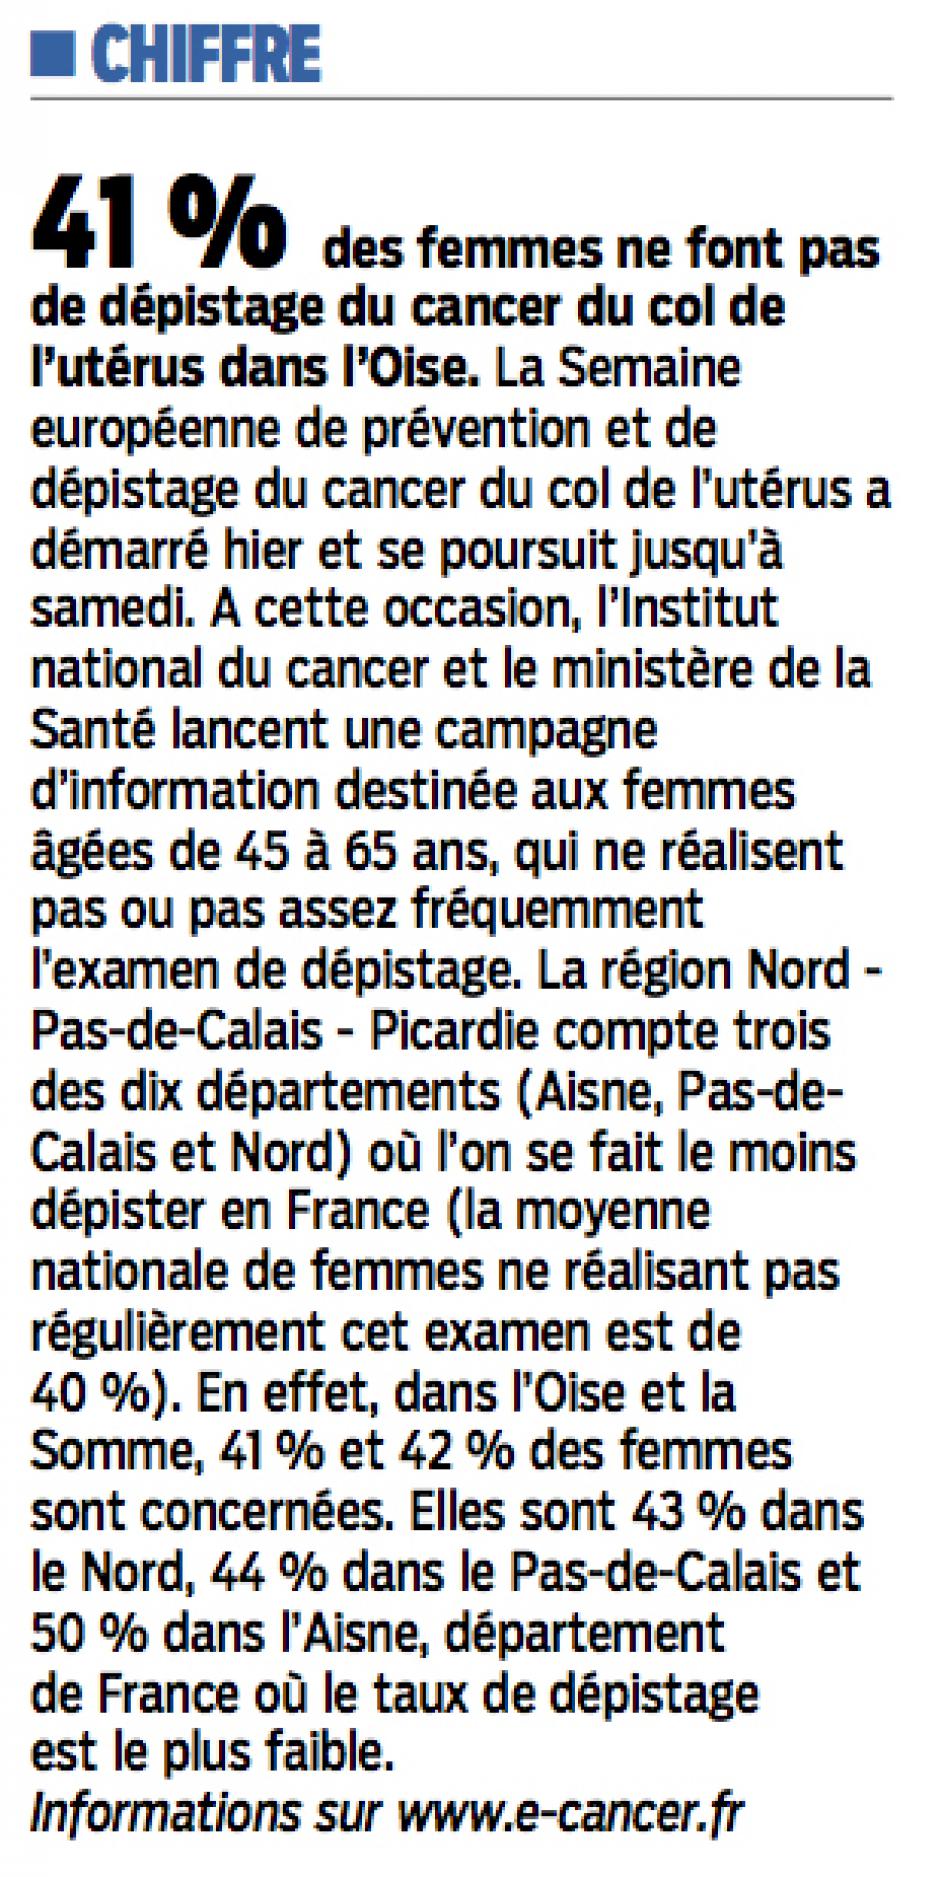 20160125-LeP-Oise-41 % des femmes ne font pas de dépistage du cancer du col de l'utérus dans le département